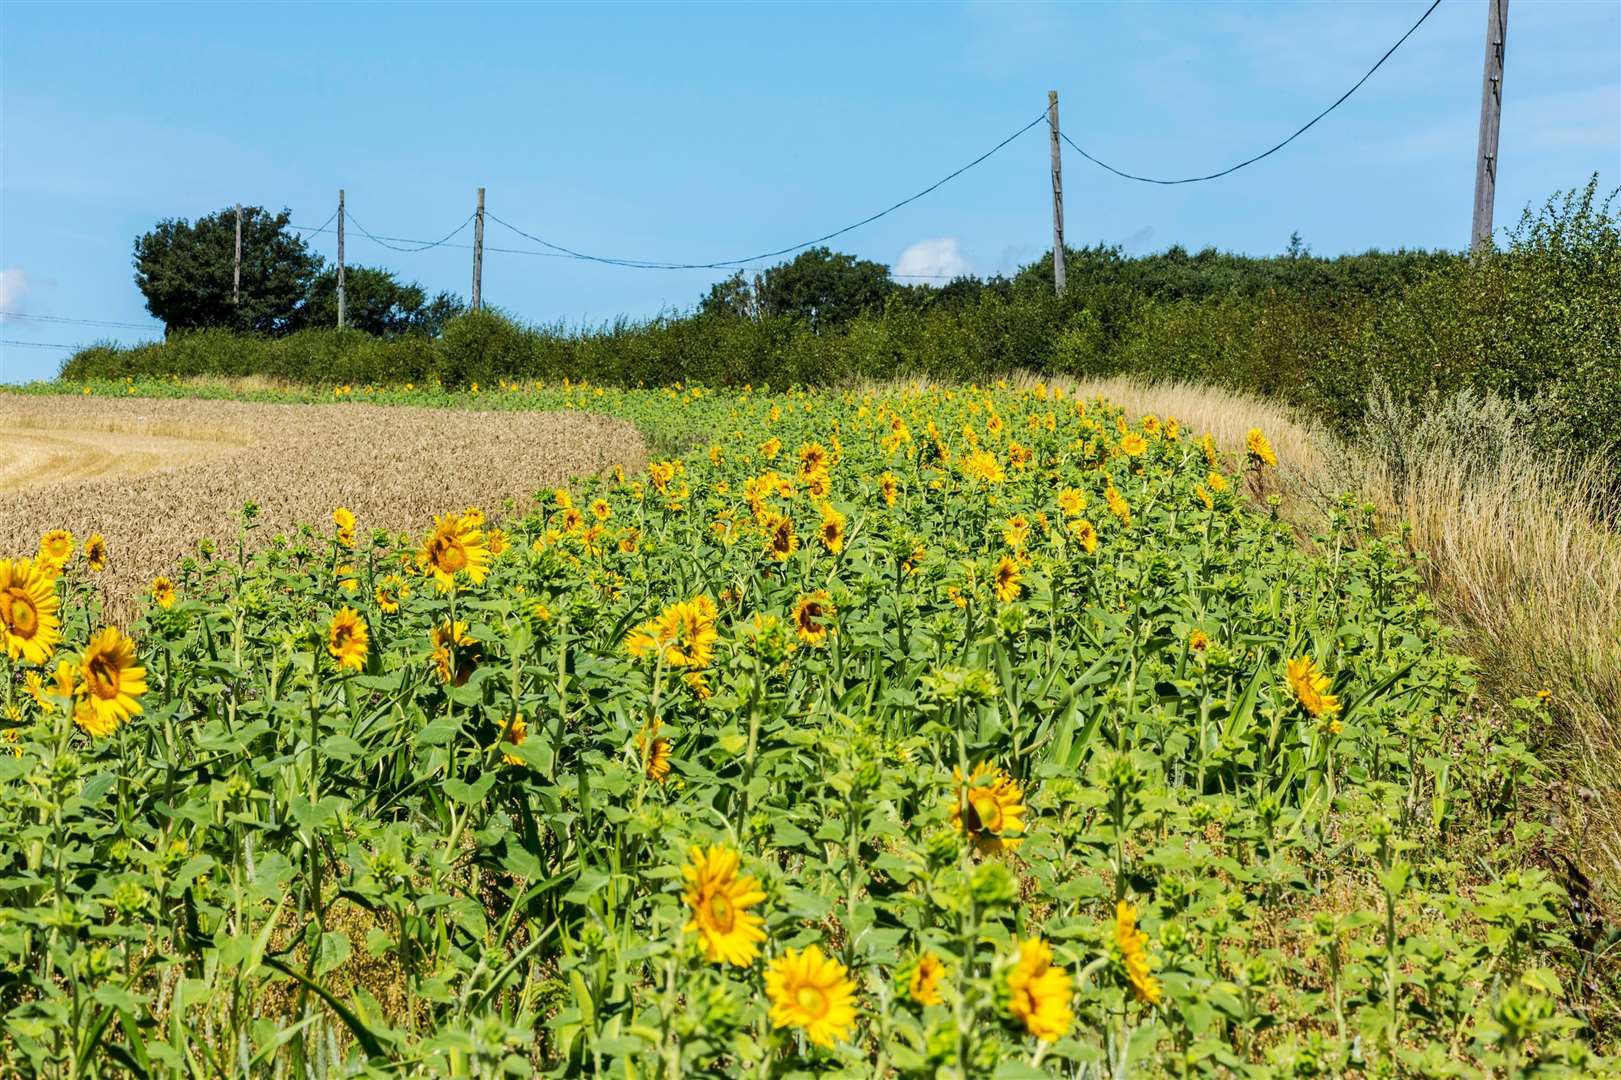 Sunflowers in Nonington field